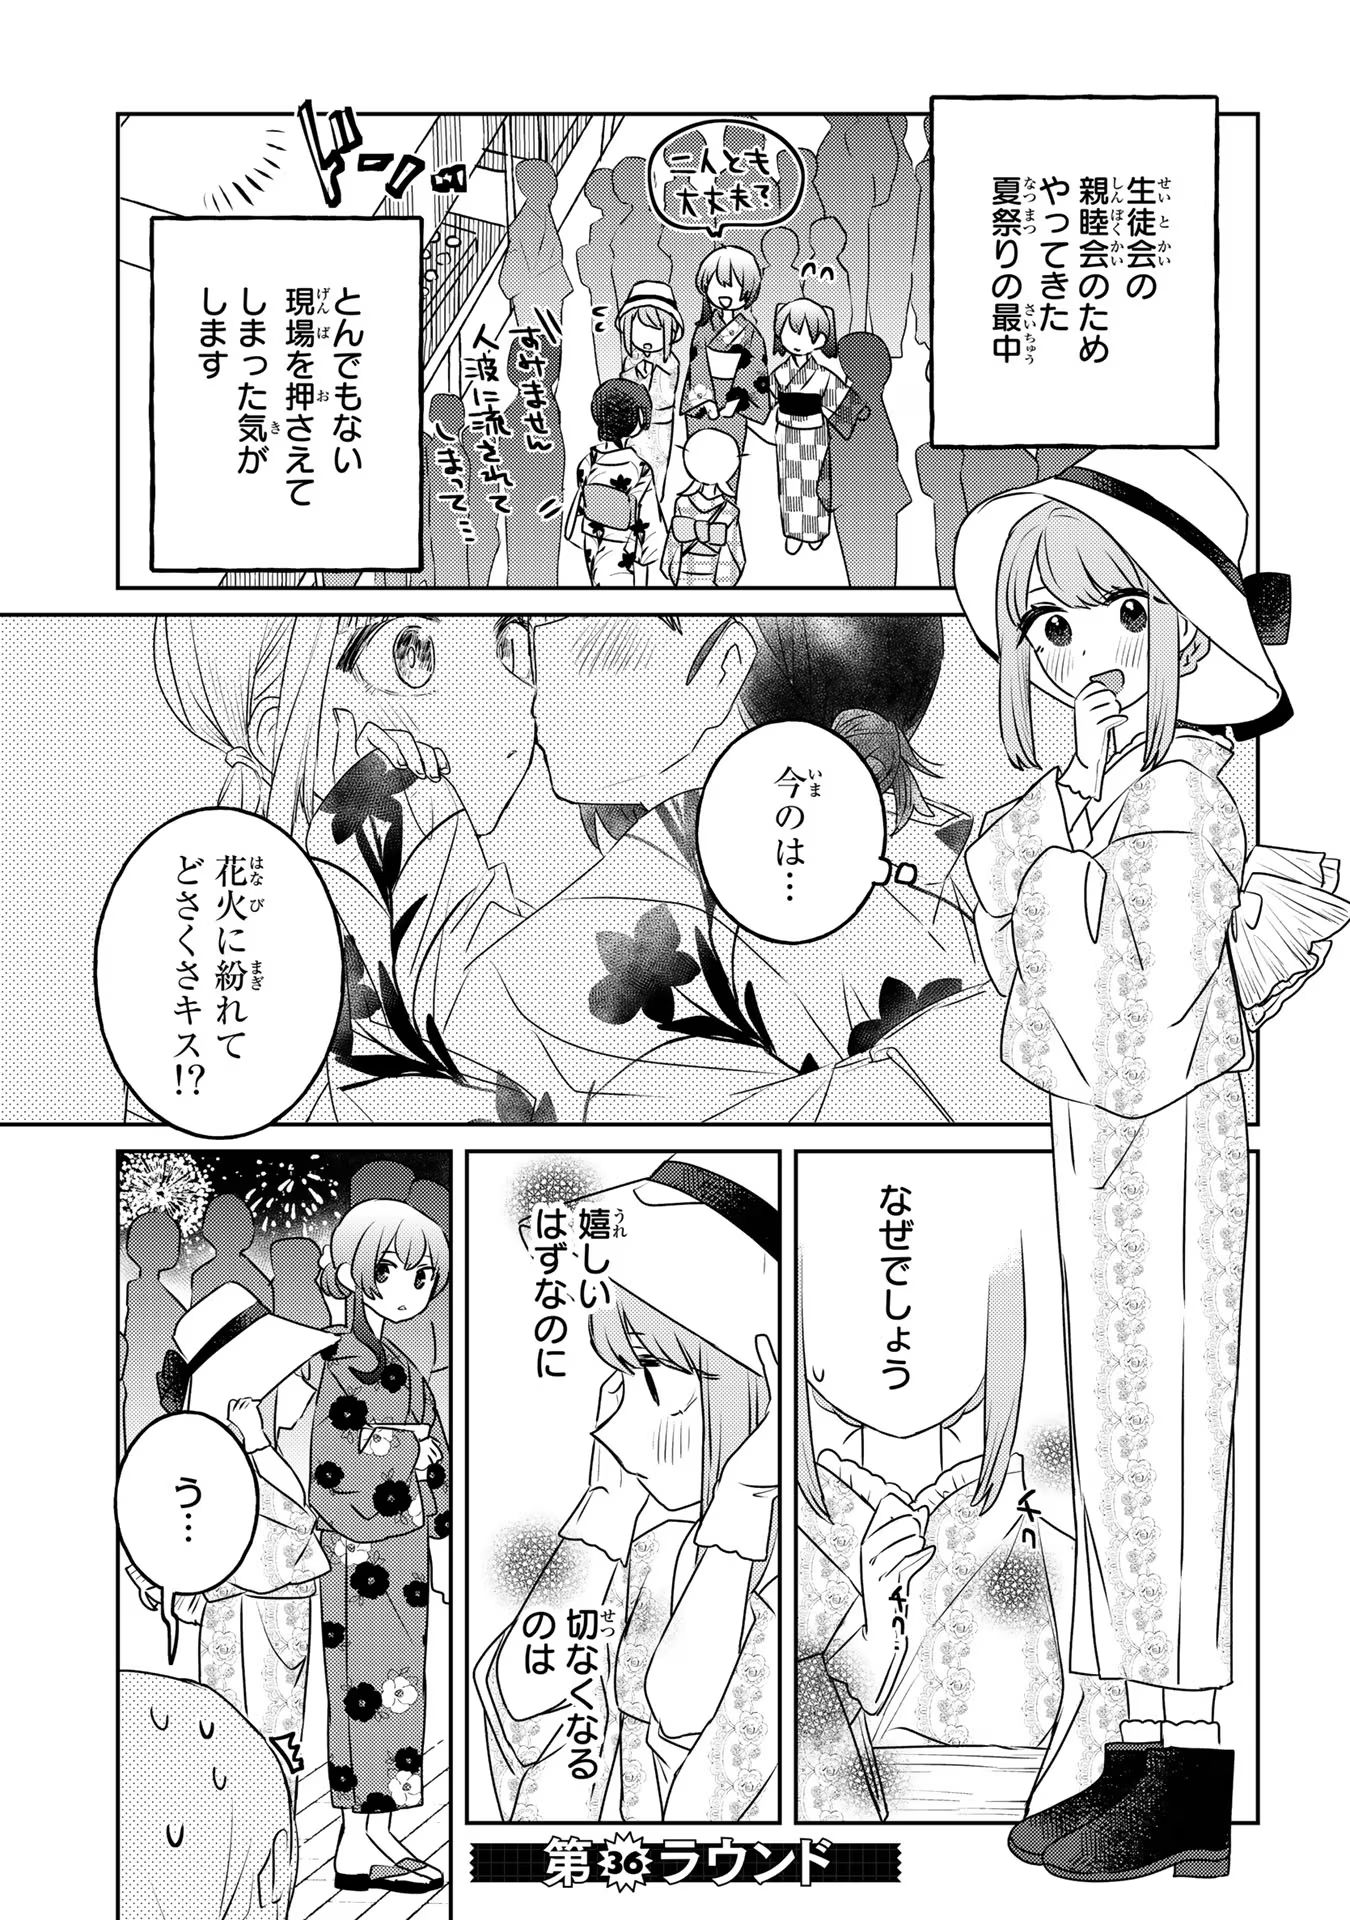 Ane ni Naritai Gishi VS Yuri ni Naritai Gimai - Chapter 36 - Page 1